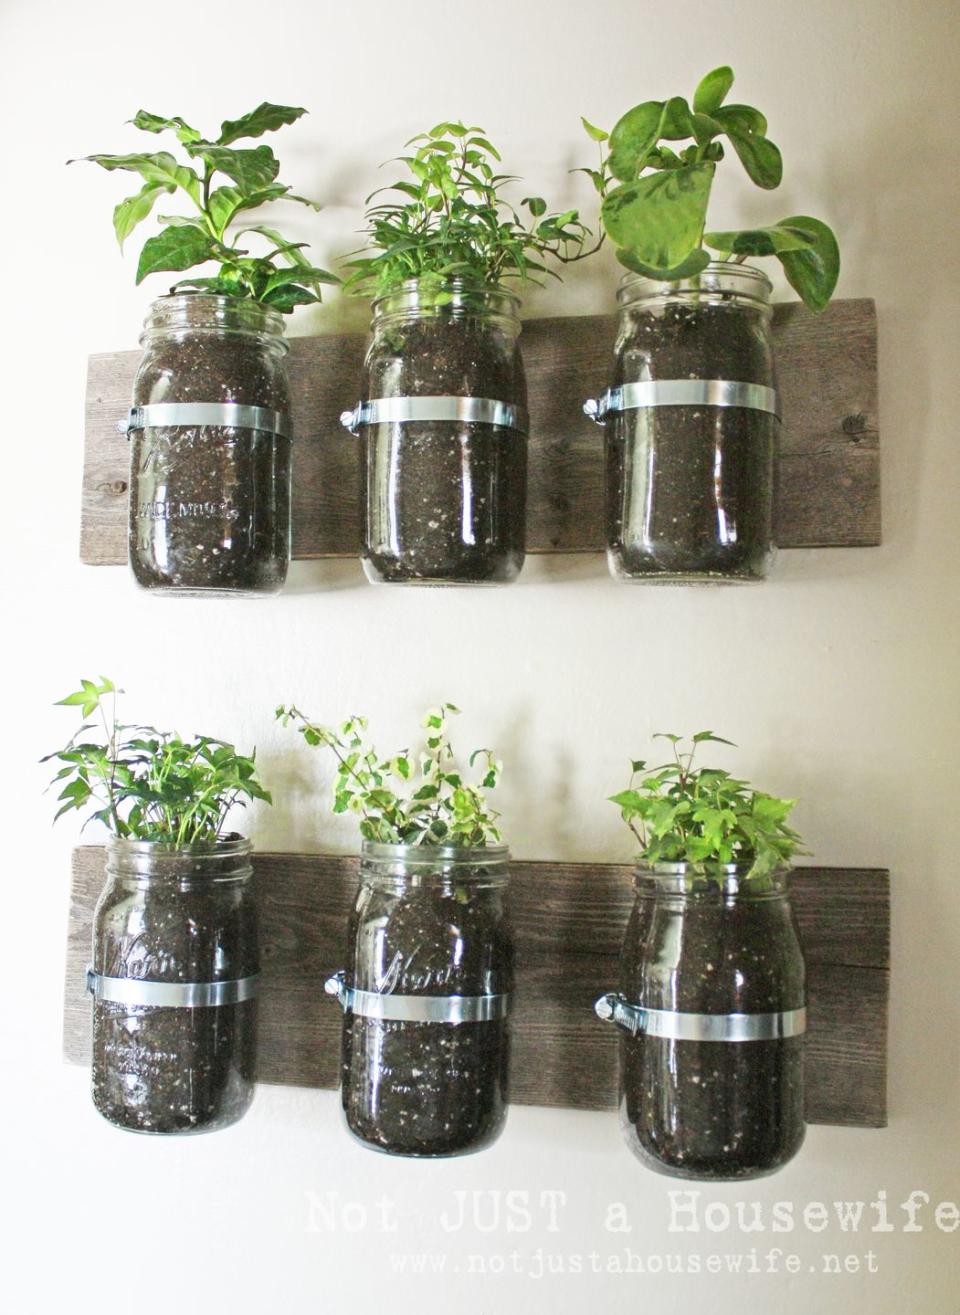 THE GOAL: A Mason Jar Herb Garden